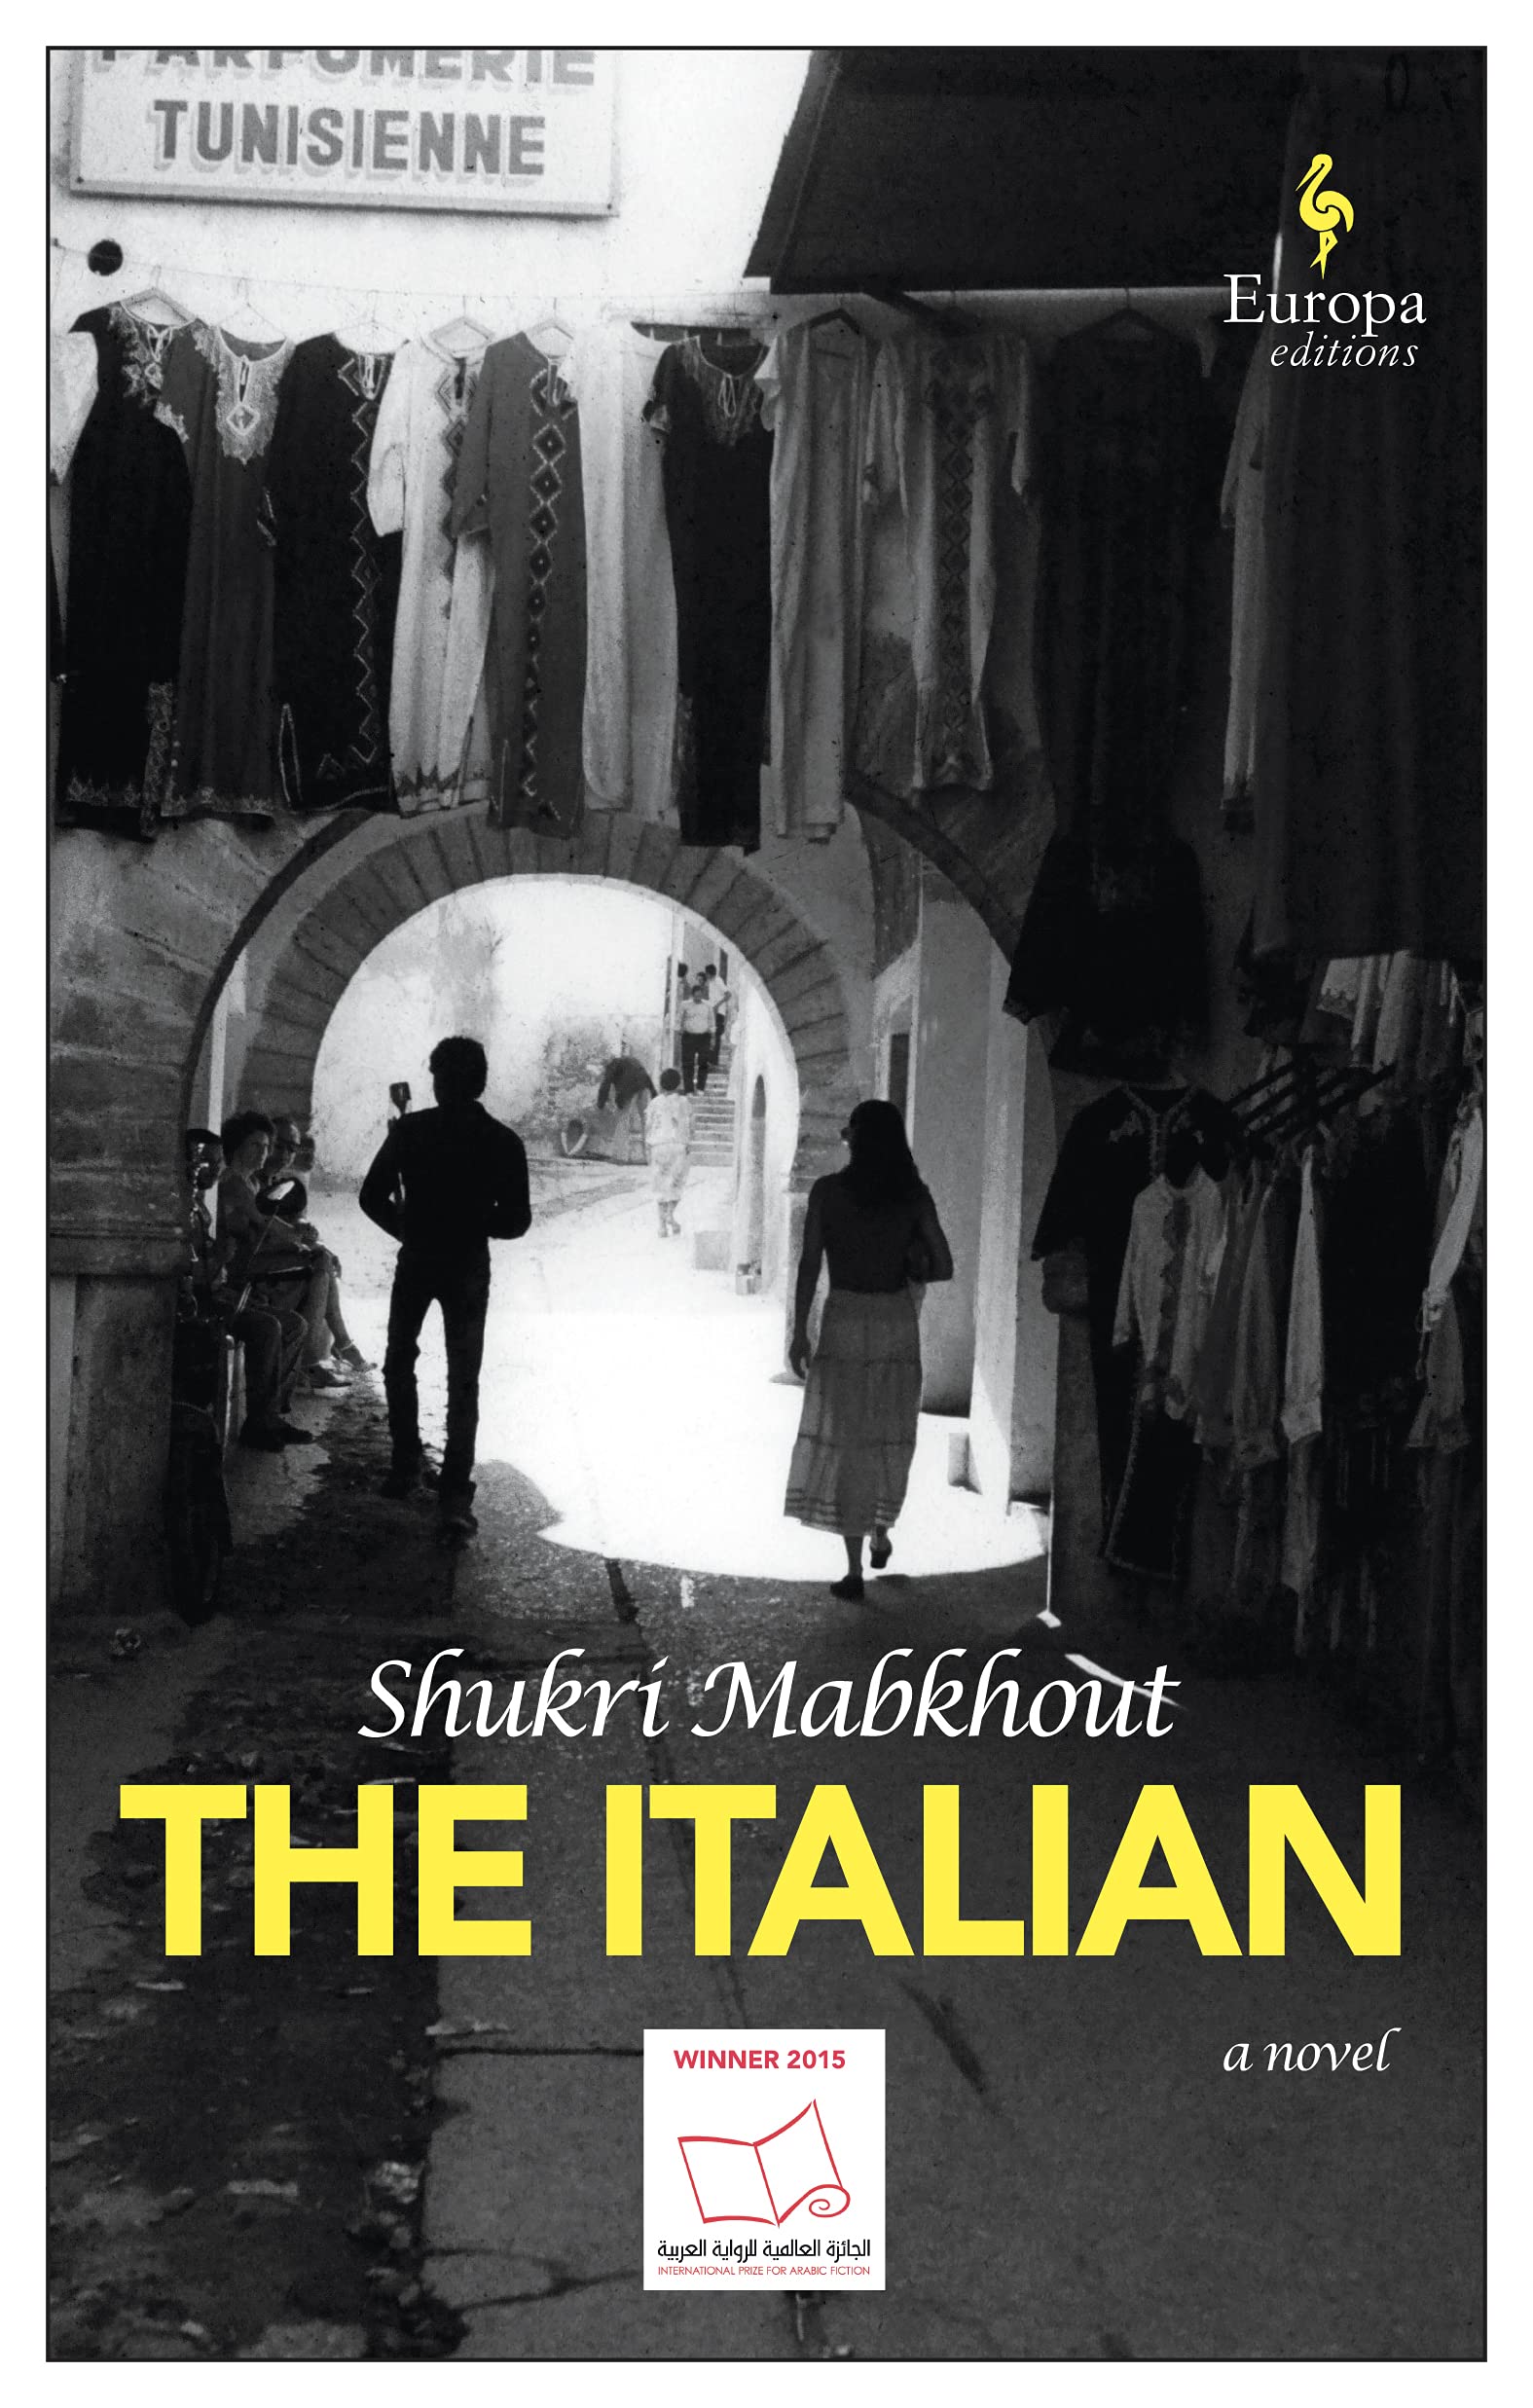 The Italian | Shukri Mabkouth image22